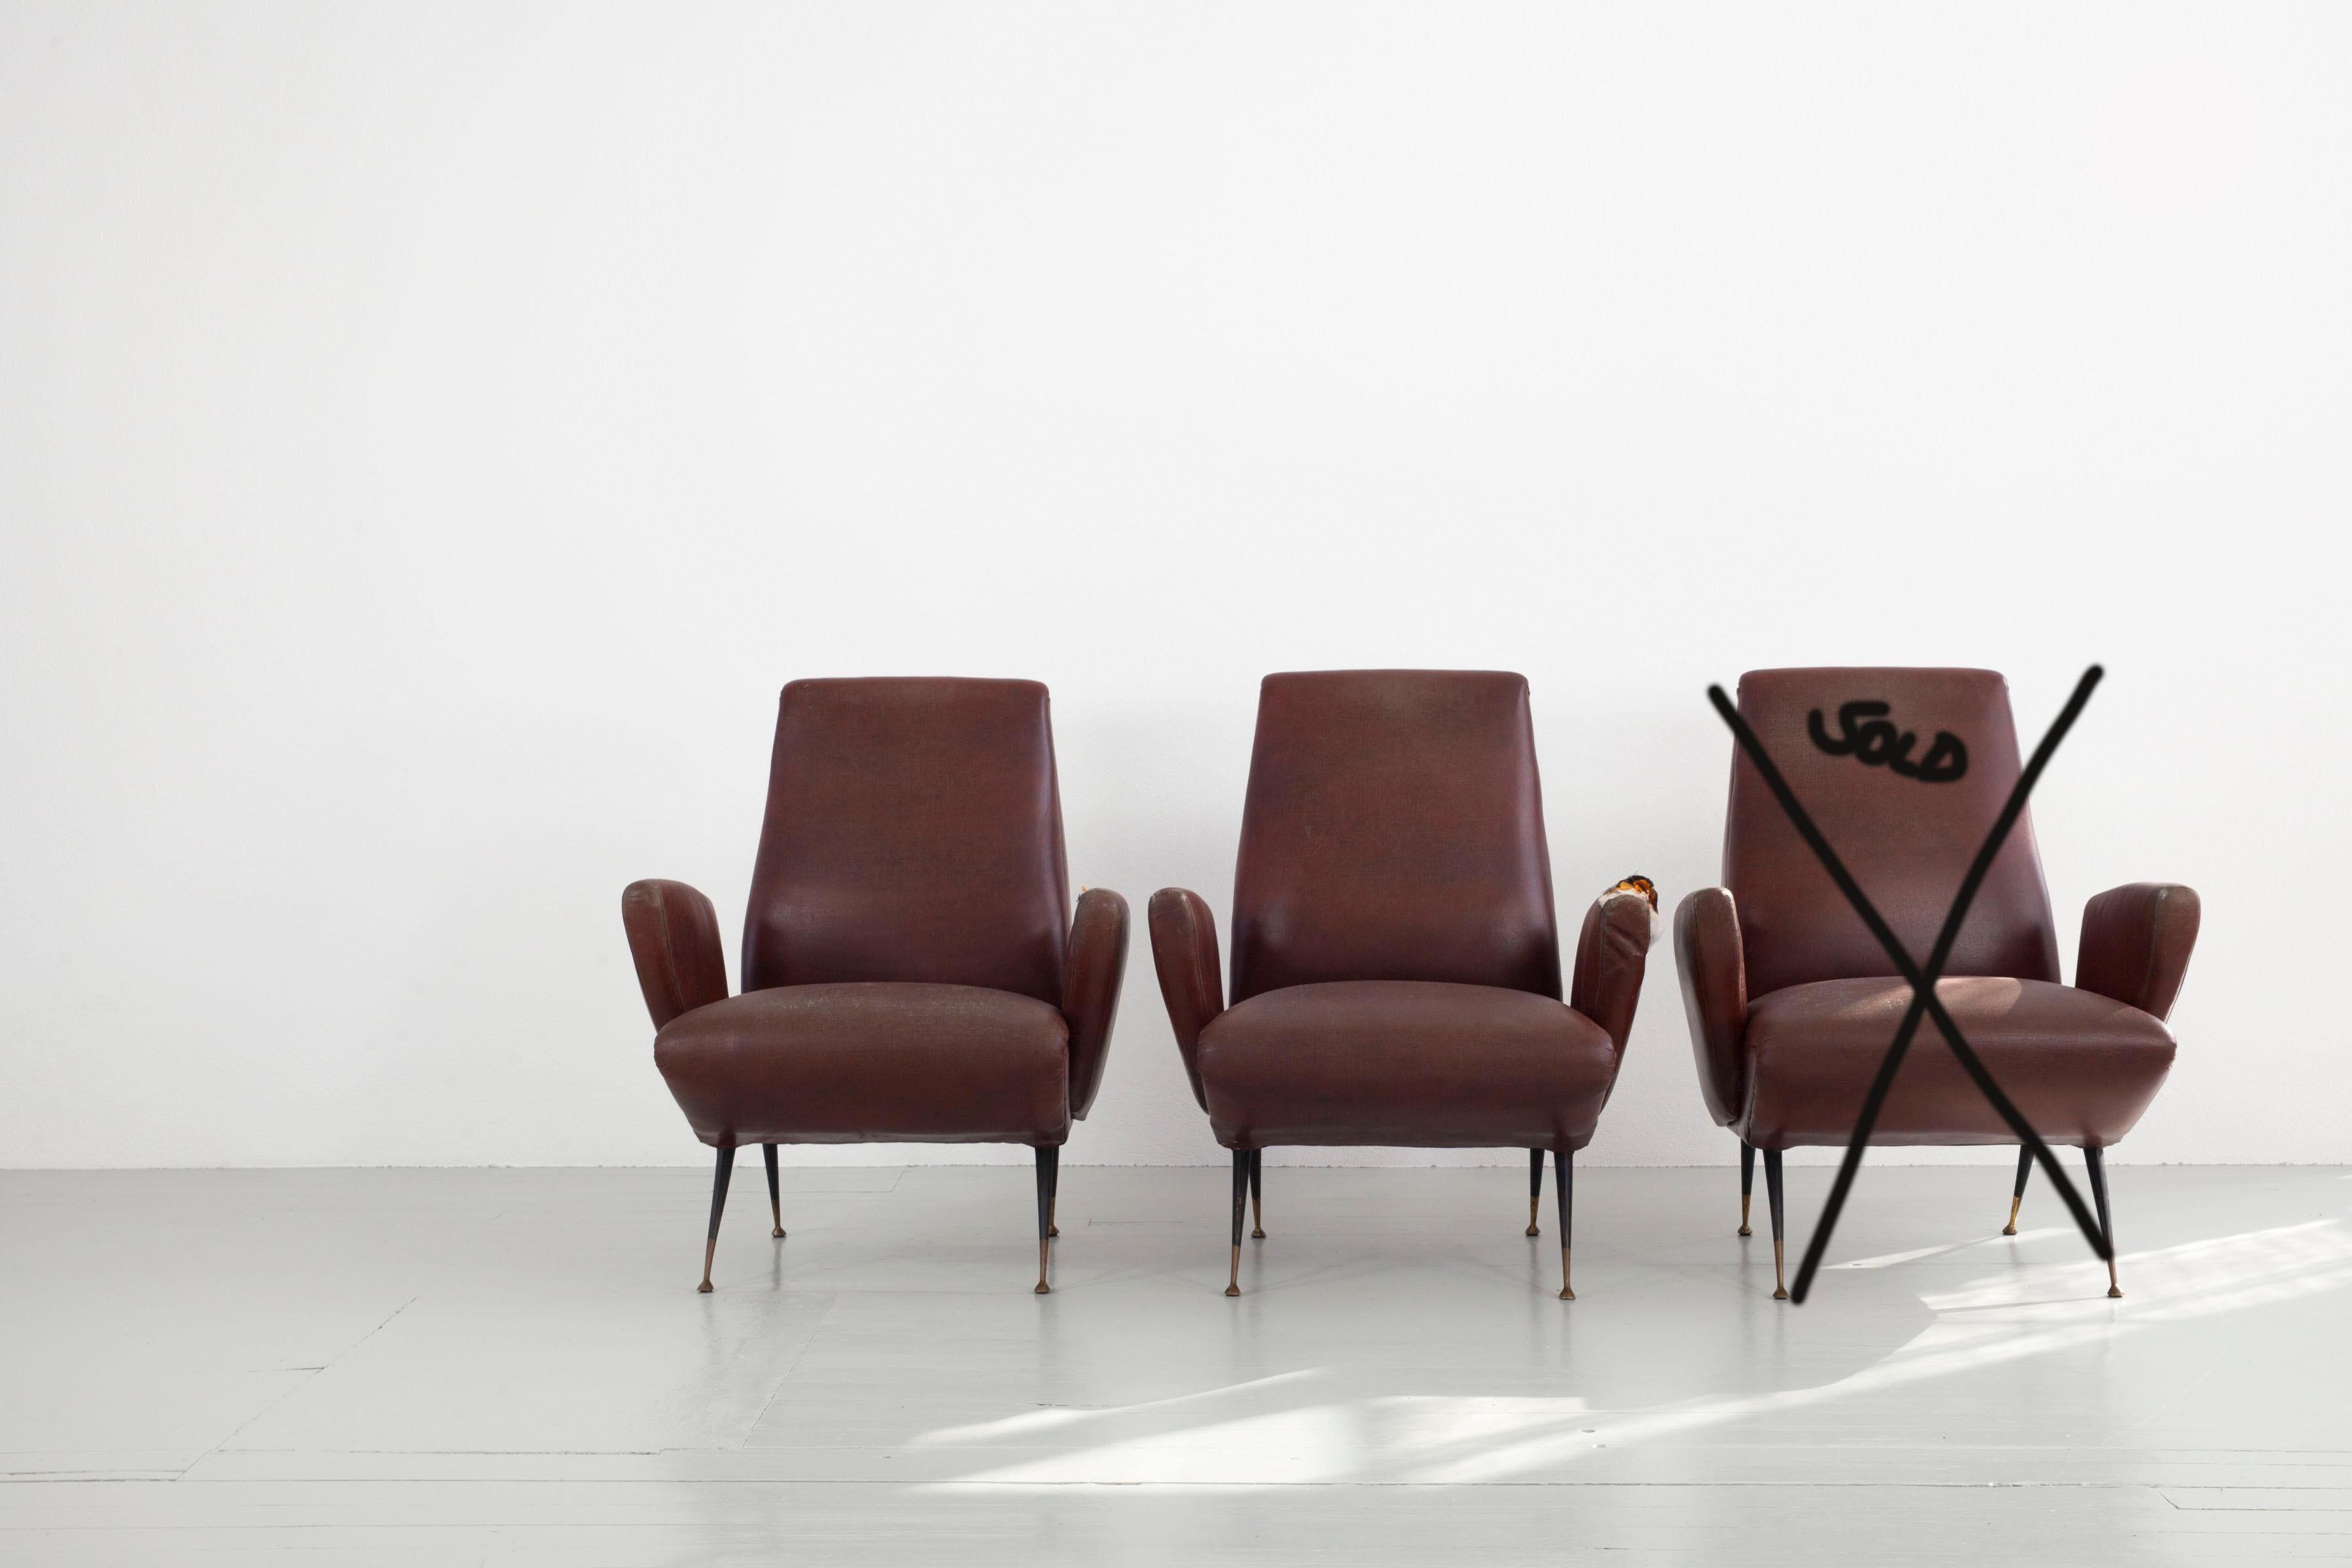 Zwei Sessel, entworfen von Nino Zondada, Italien, 1950er Jahre. Die Sessel sind mit Vinylleder gepolstert und haben klassische Metallfüße mit Messingelementen für einen zweifarbigen Look. Die beiden Stücke, die ich brauche, müssen neu gepolstert